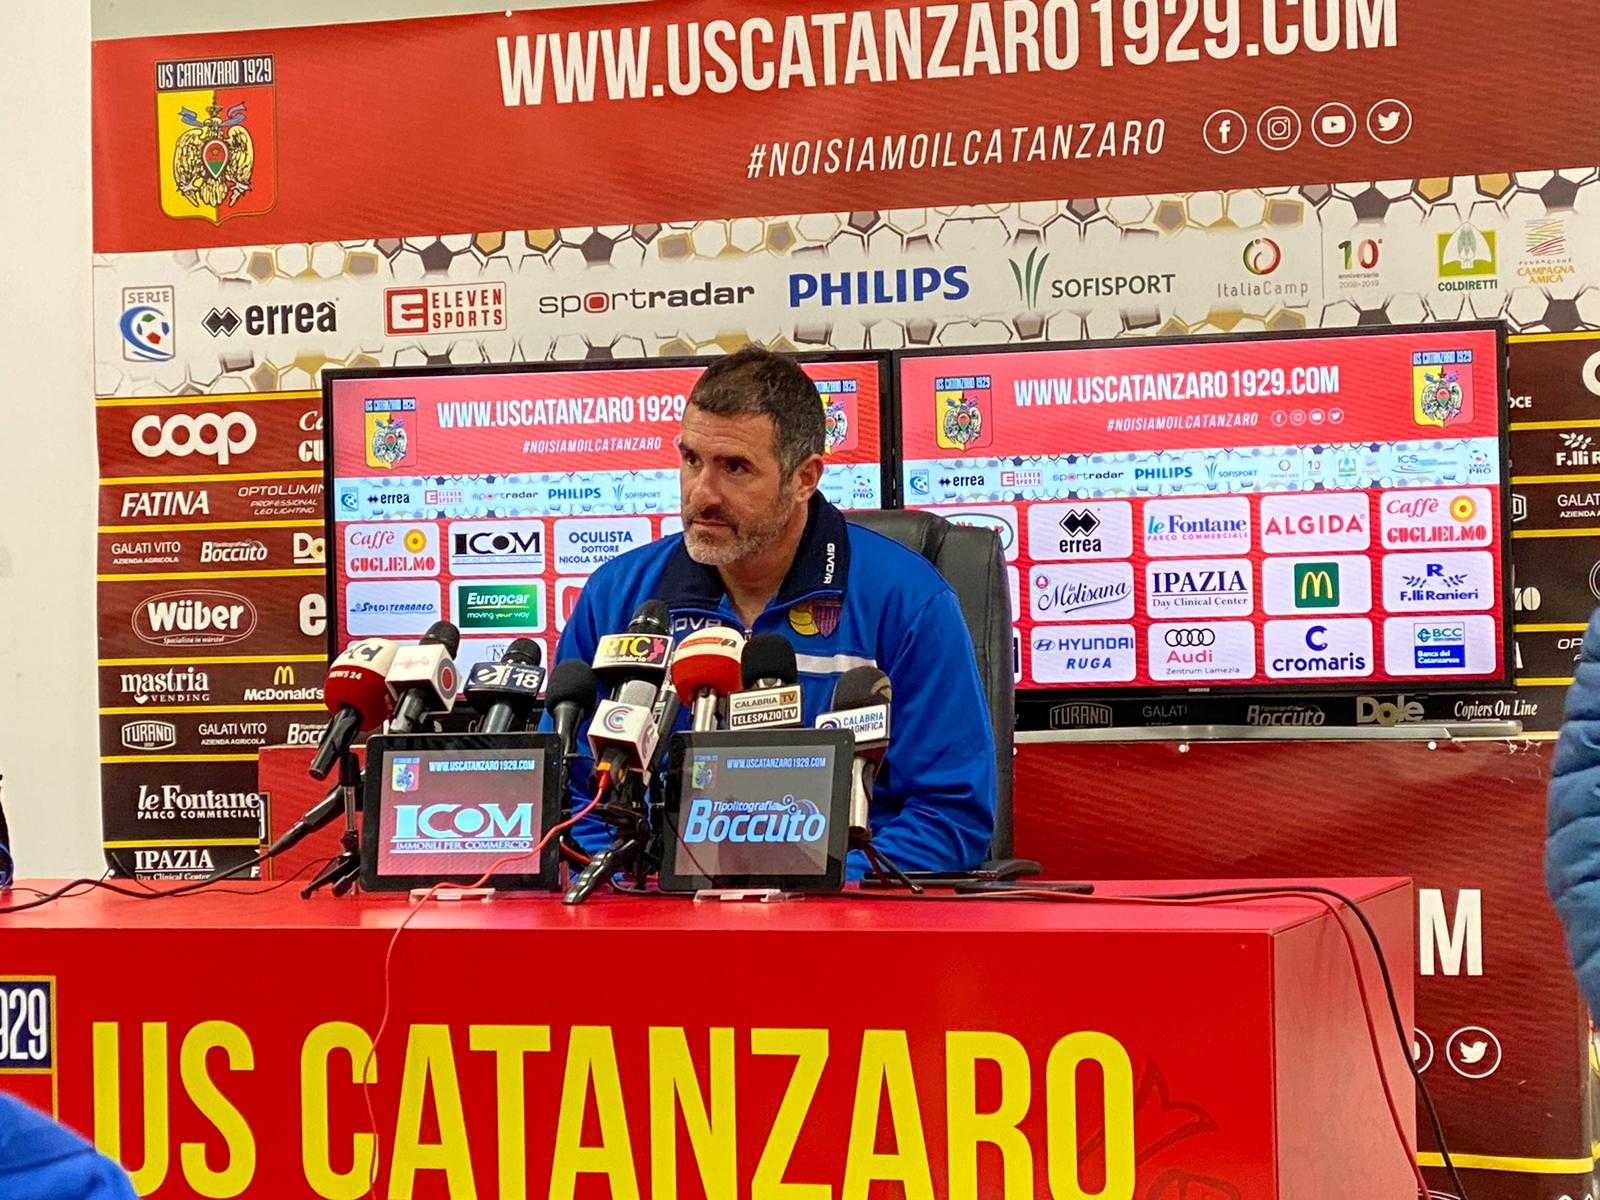 Calcio. Catanzaro-Catania 3-0. Accade tutto nella ripresa (con highlights)